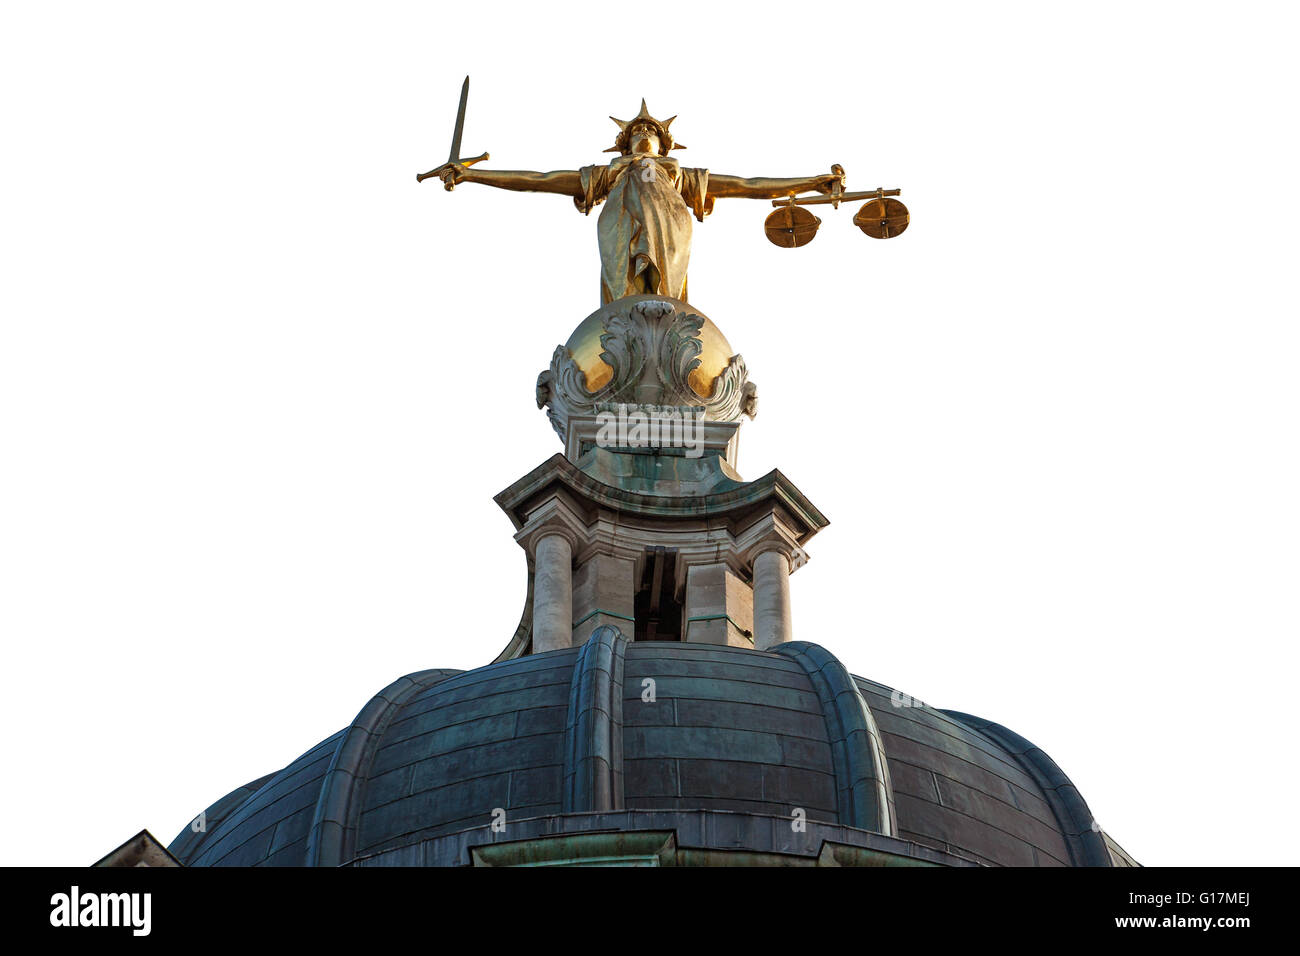 Schneiden Sie aus dem Gold Justitia Statue auf der Spitze des Old Bailey in London, England. Stockfoto